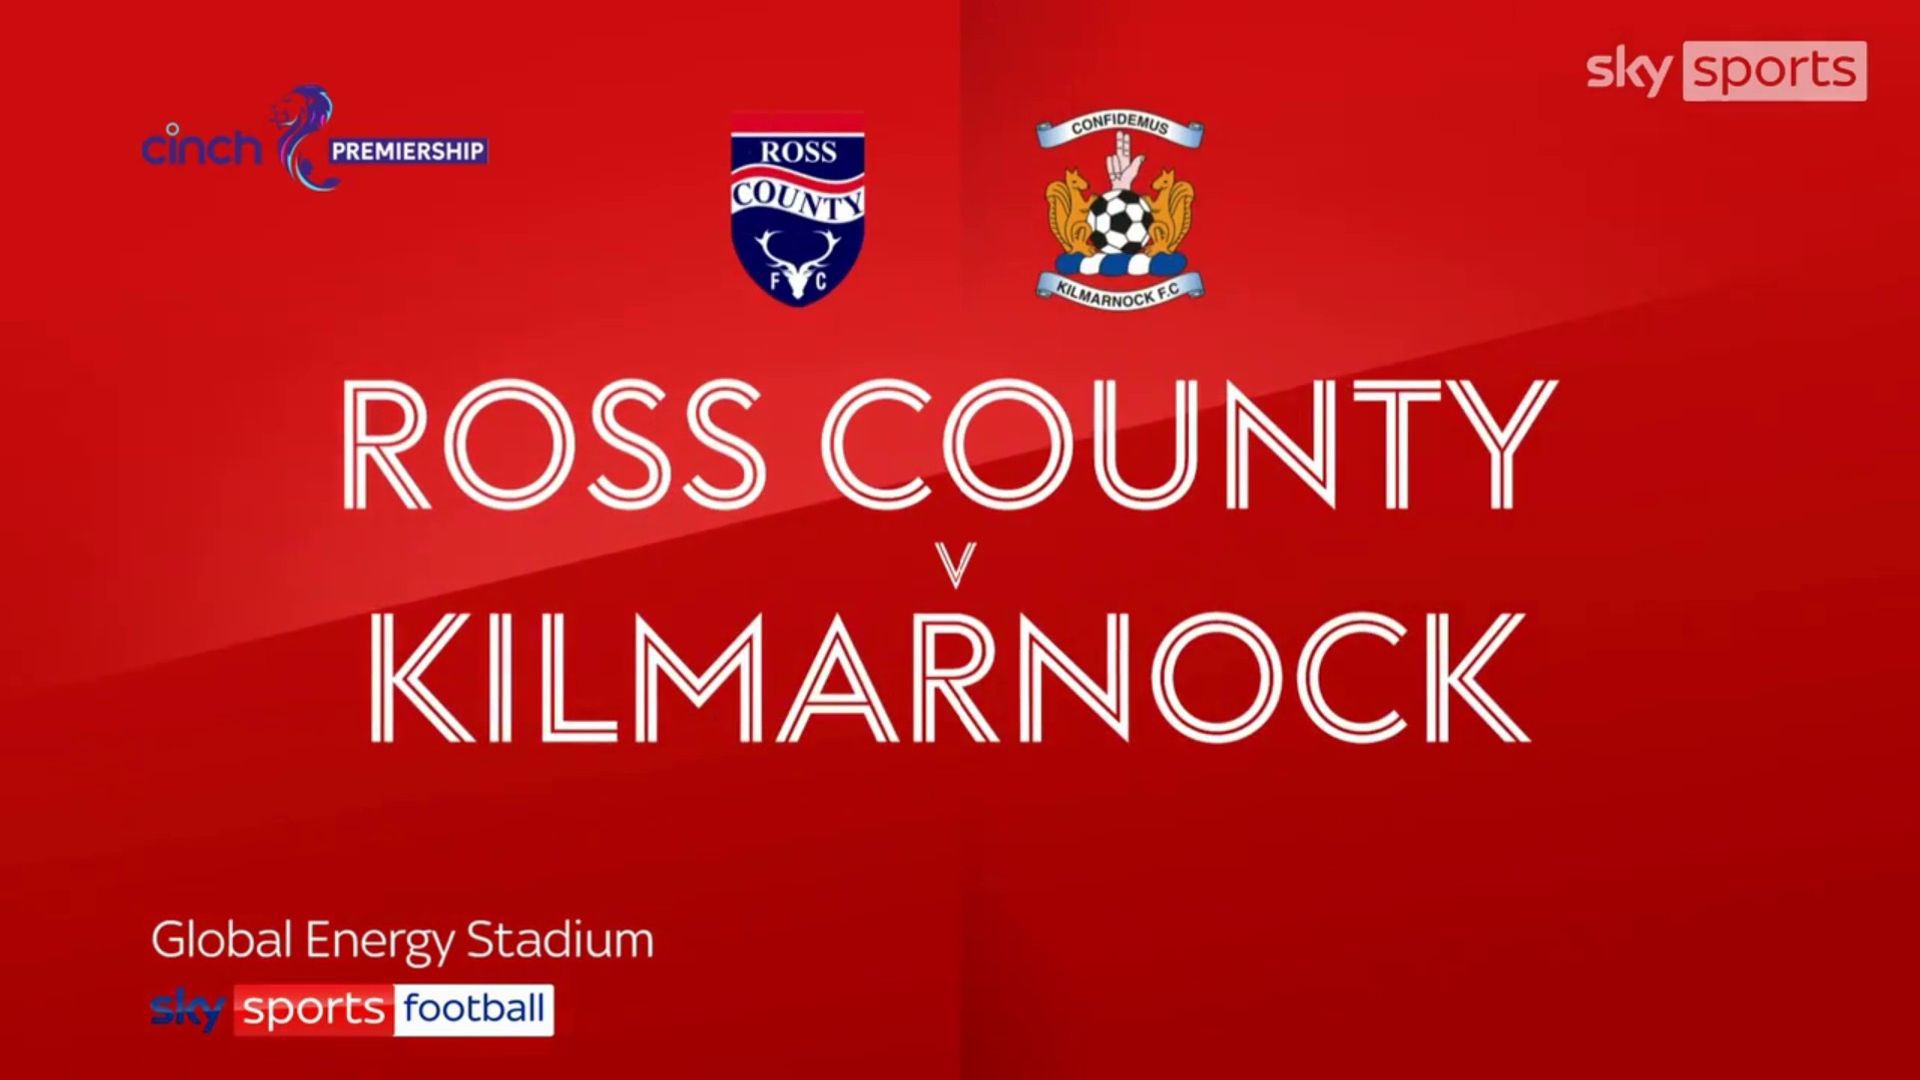 Ross County 3-0 Kilmarnock